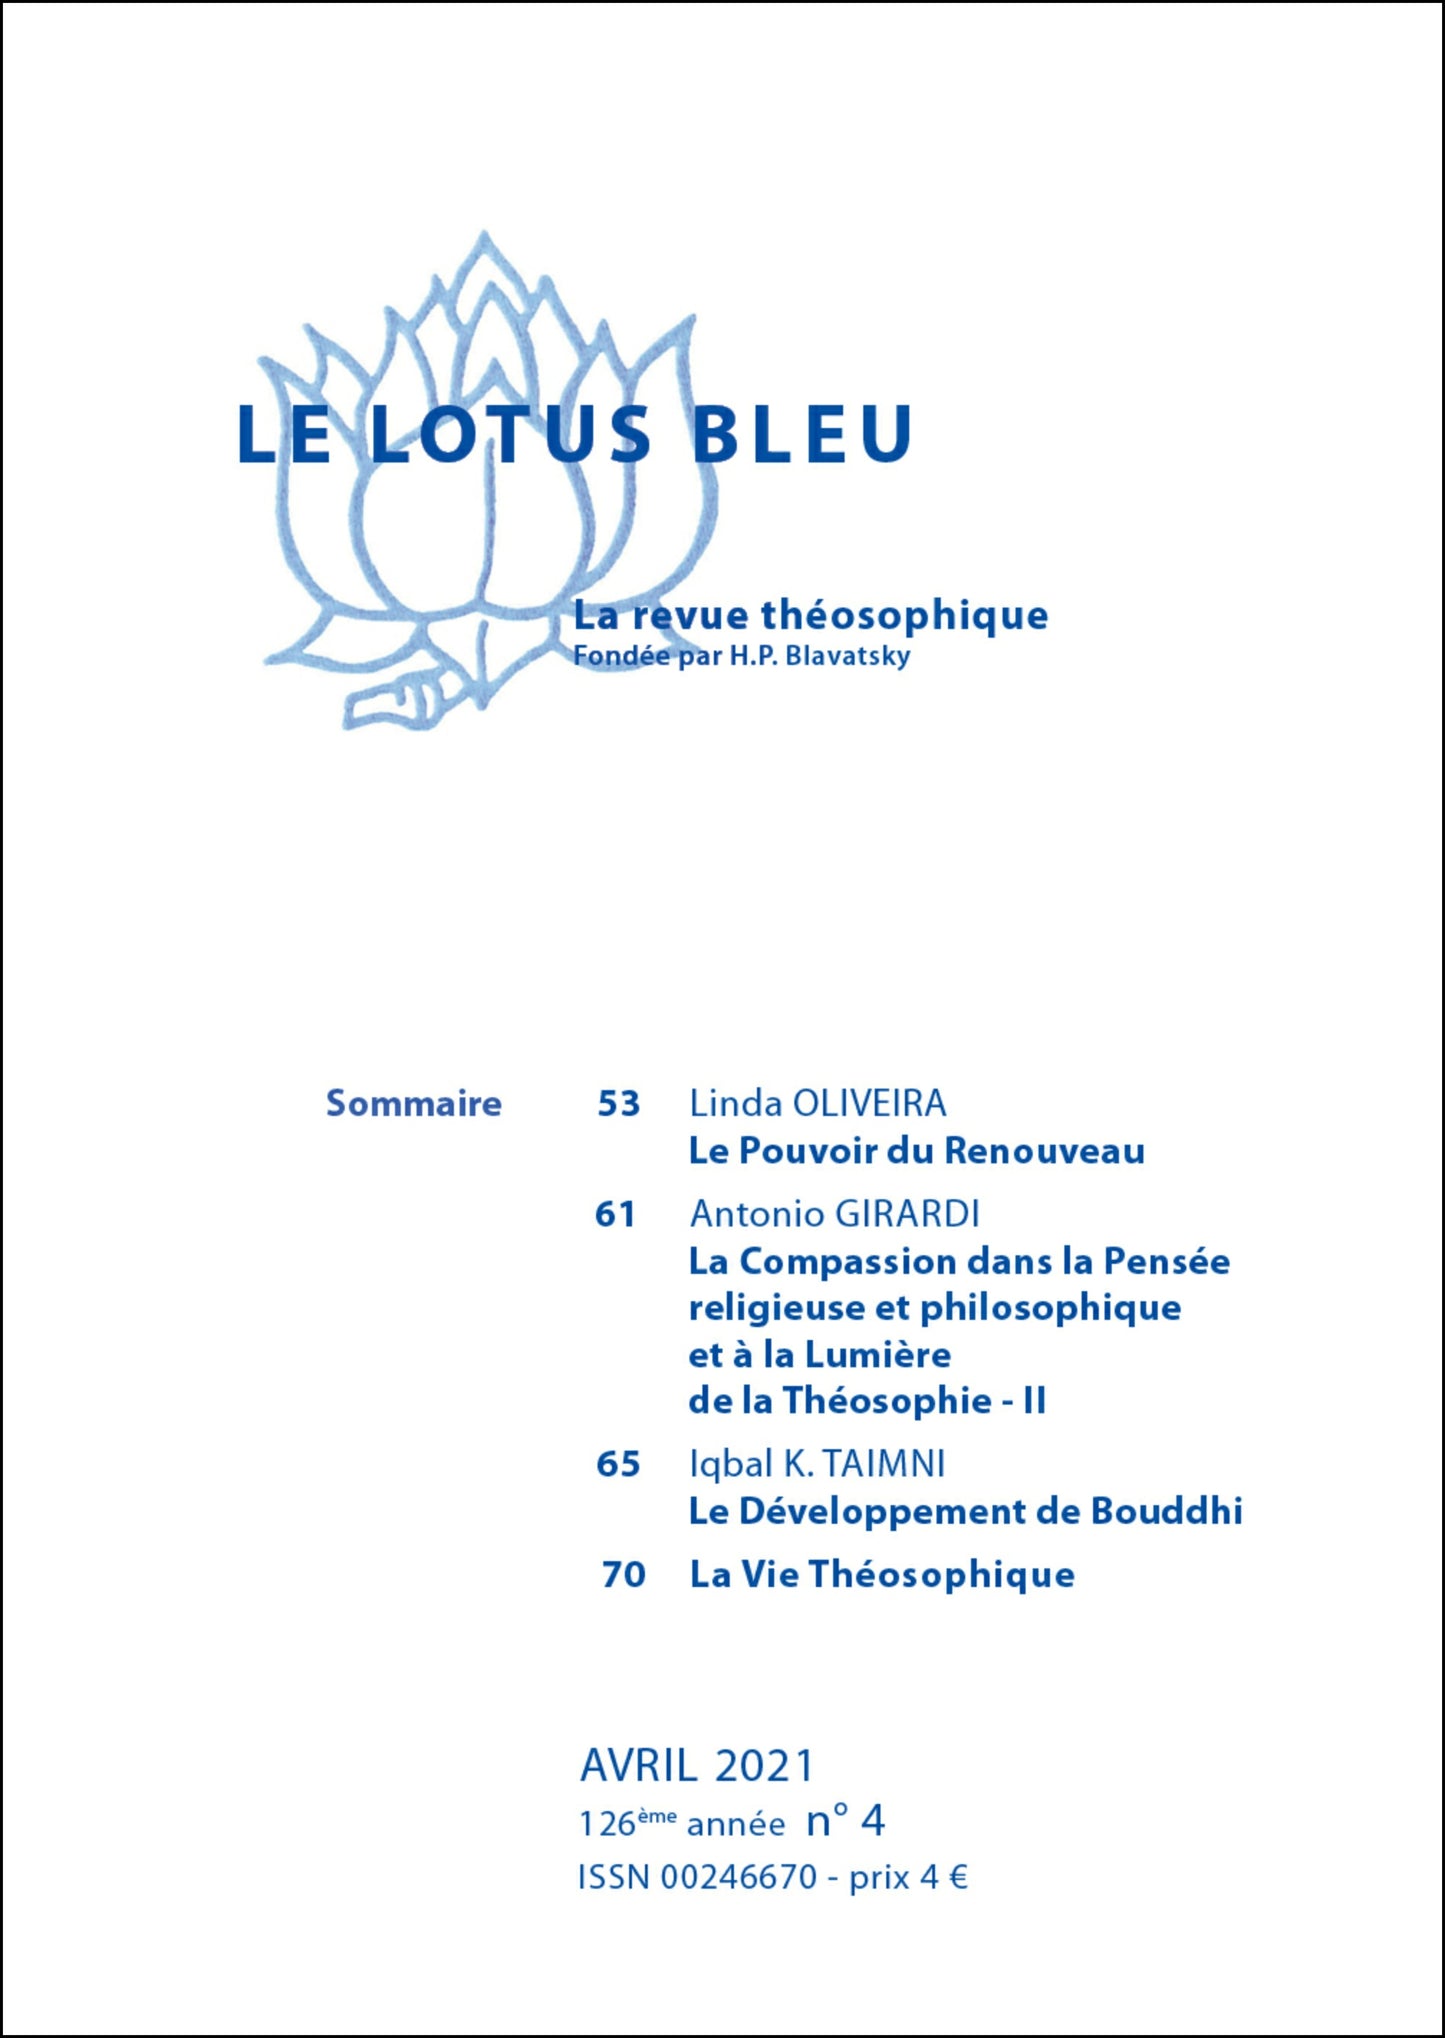 Le Lotus Bleu 2021/04